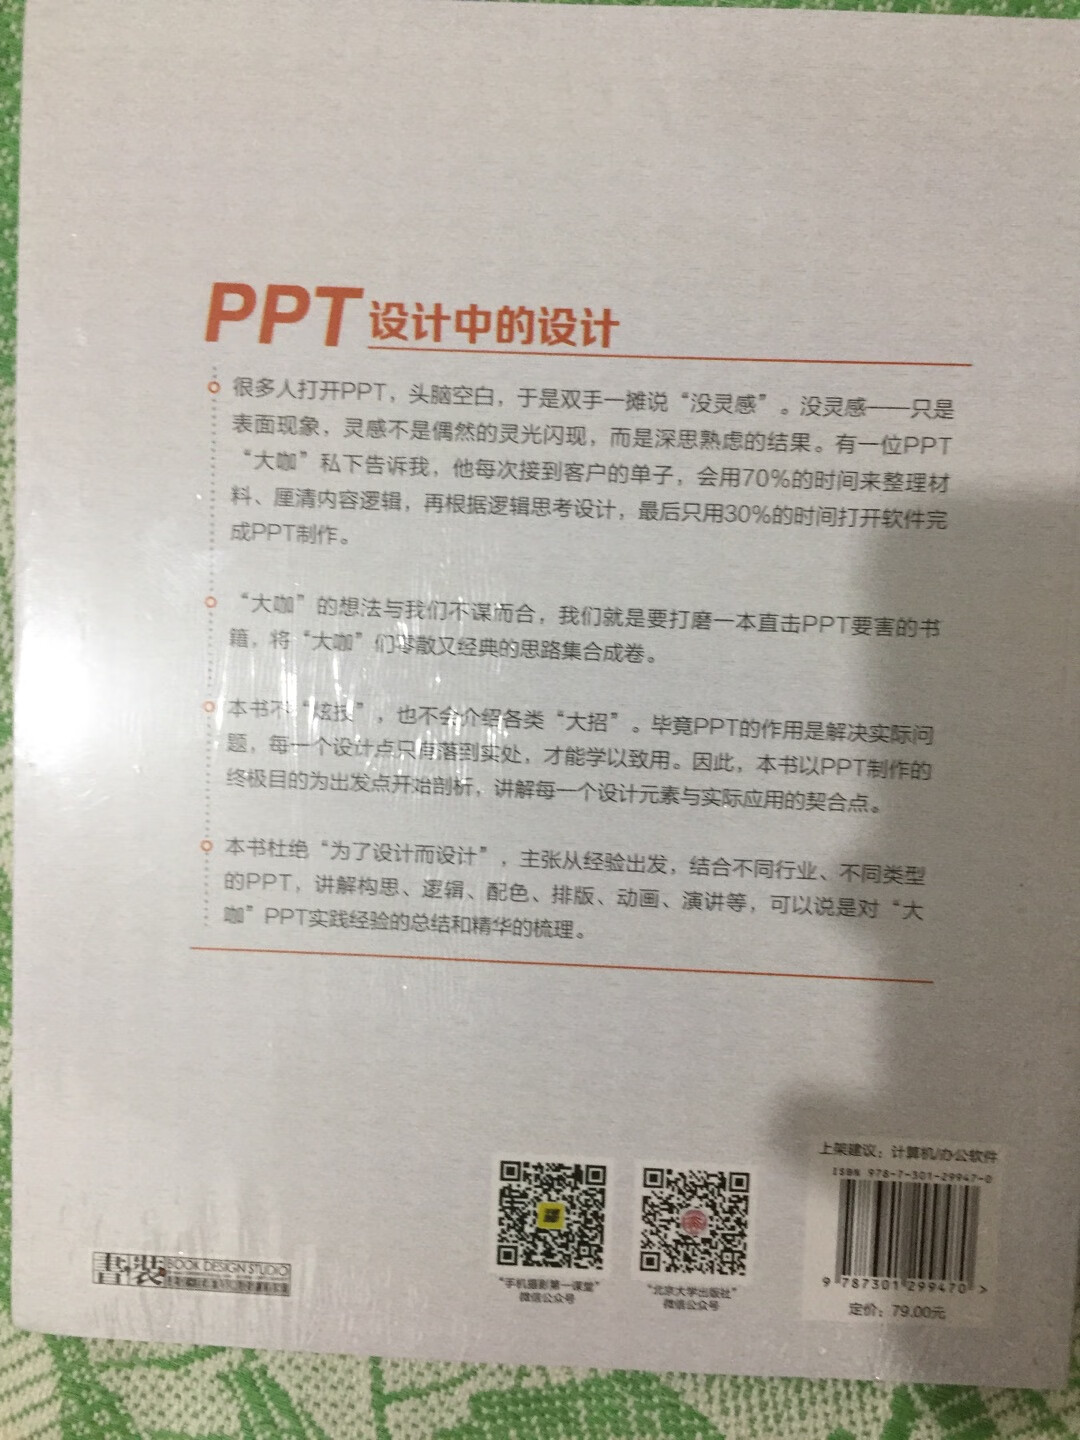 非常好的一本PPT工具书，实用又有收藏价值！物流包裹完好，发货快，到货准时无误，赞一个！